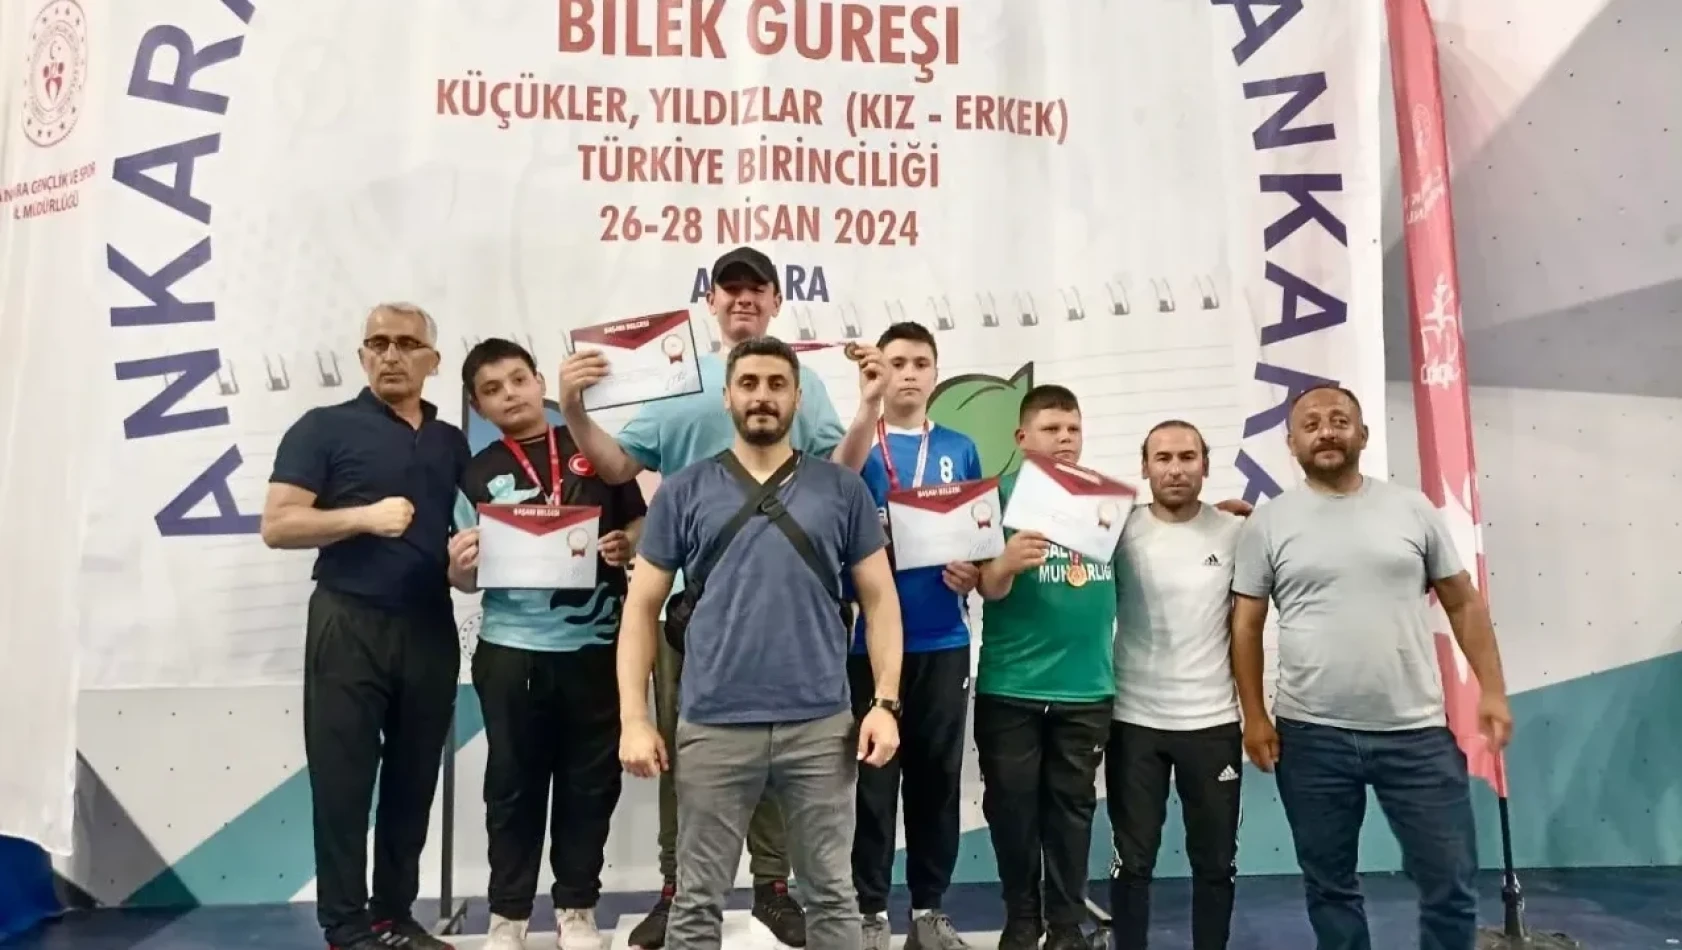 Bilek Güreşi'nden Elazığ'a Türkiye Birinciliği